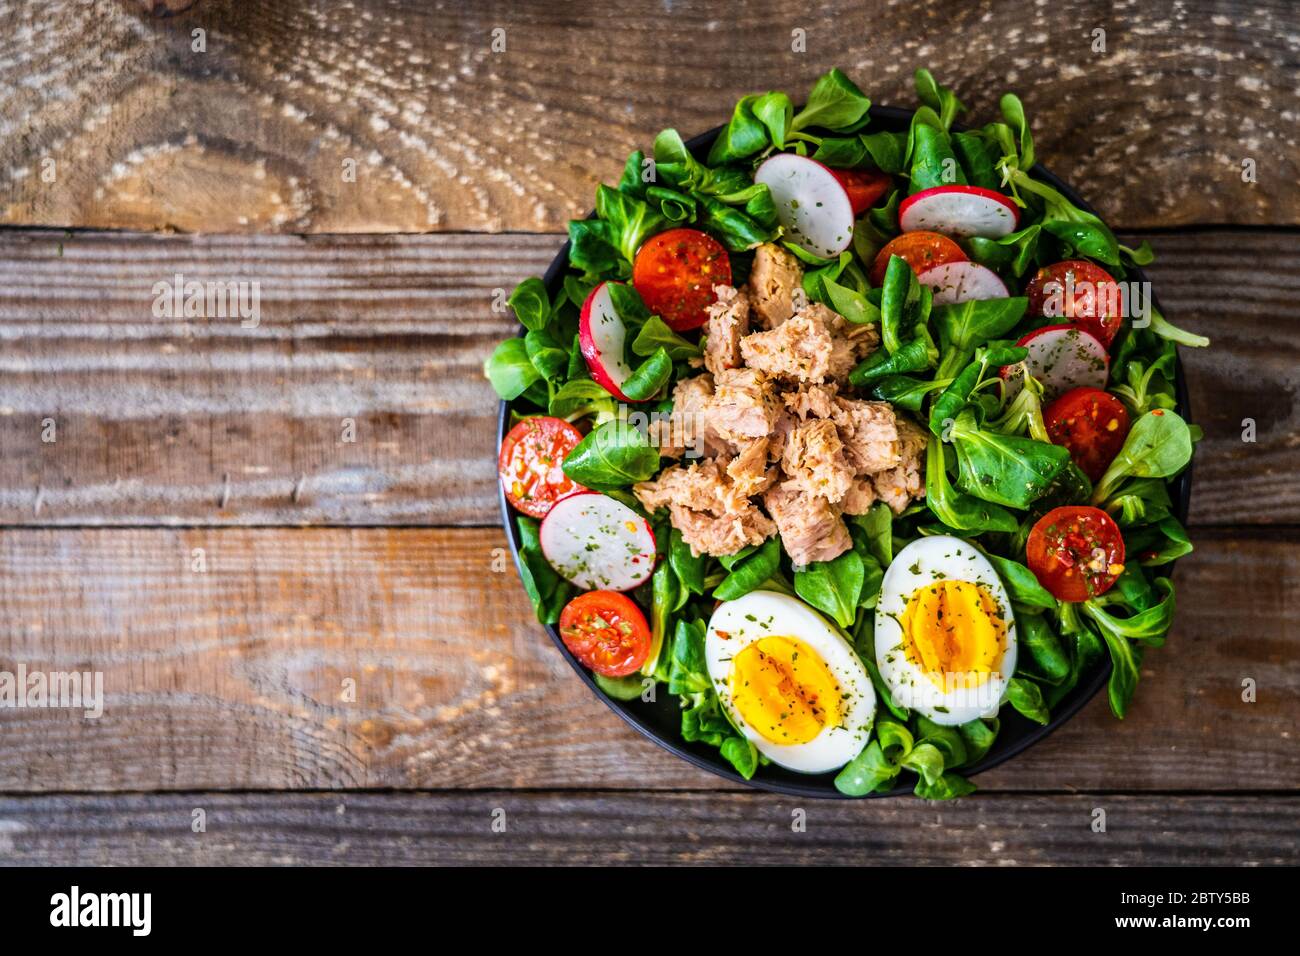 Tuna salad on wooden table Stock Photo